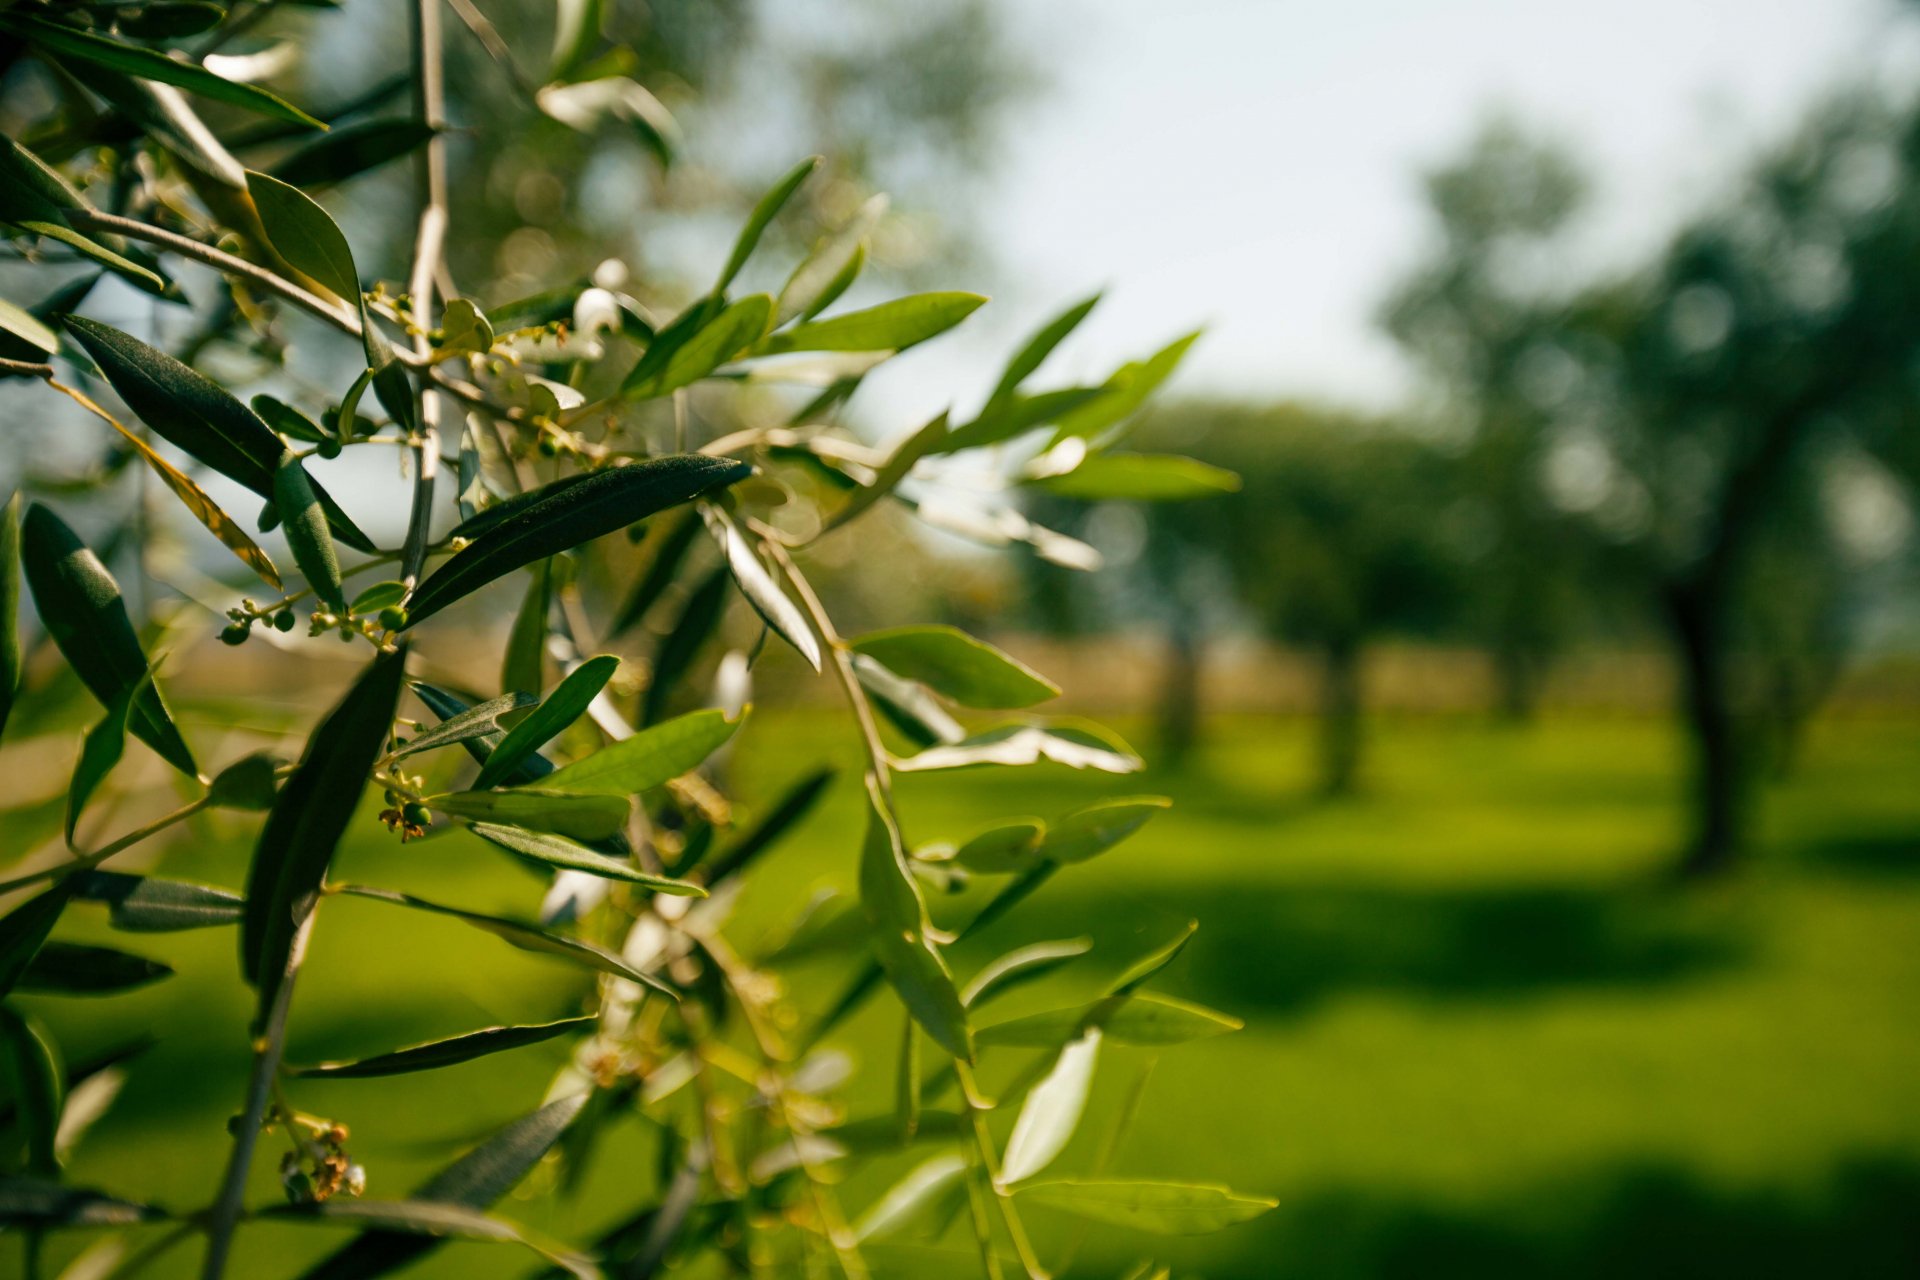 Le sfide dell’olivicoltura contemporanea richiedono un nuovo approccio in campo